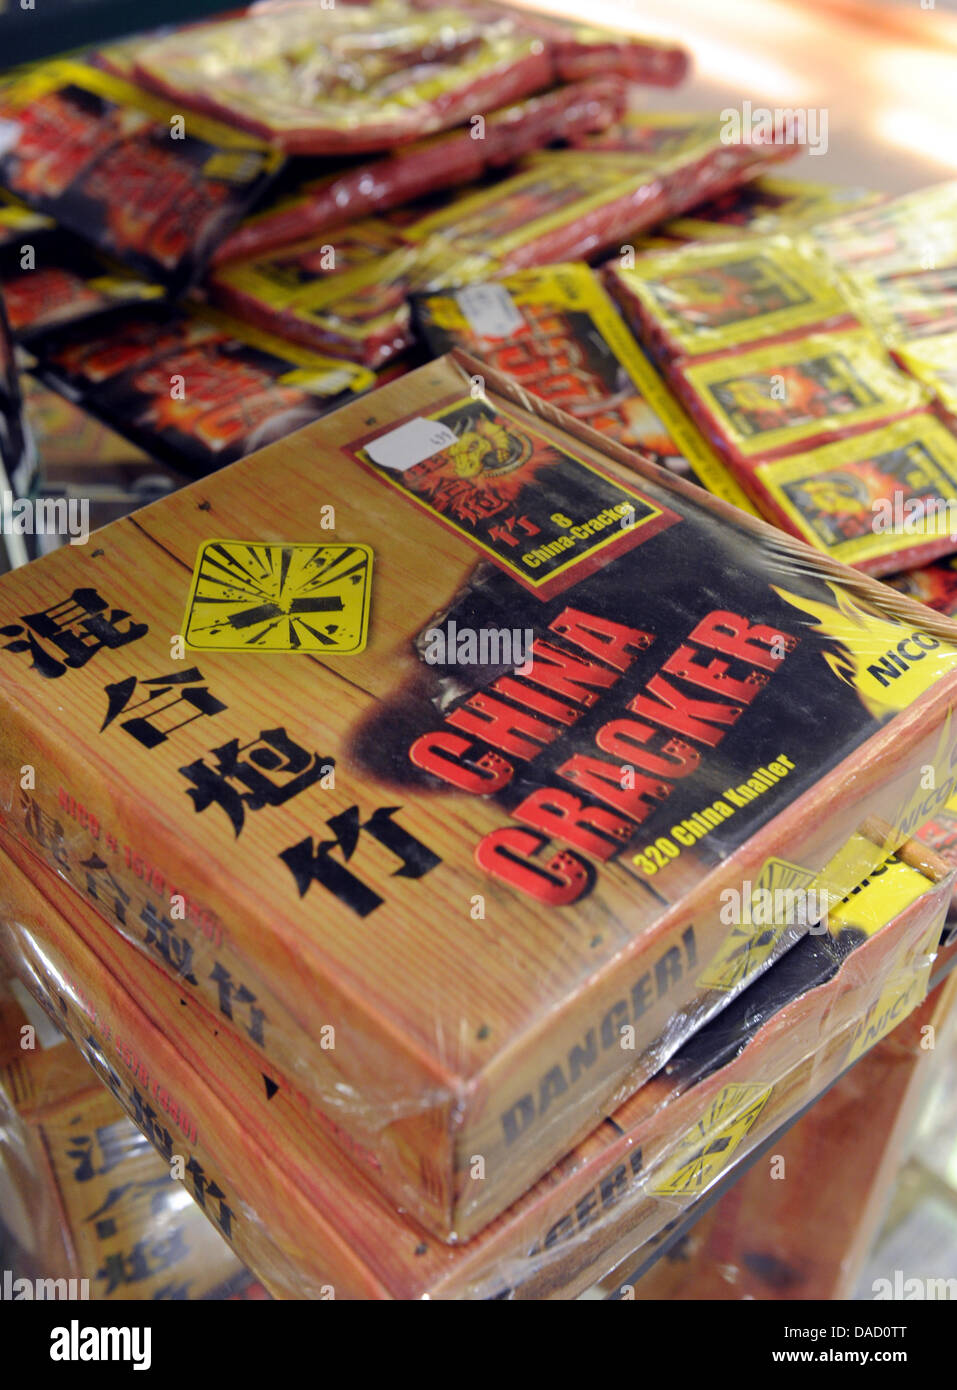 Petardi cinesi sono venduti presso una filiale del negozio di Mueller in Freiburg, Germania, 29 dicembre 2011. Le persone sono autorizzate ad acquistare i fuochi d'artificio in Baden-Wuertemberg a partire da oggi. Foto: Patrick Seeger Foto Stock